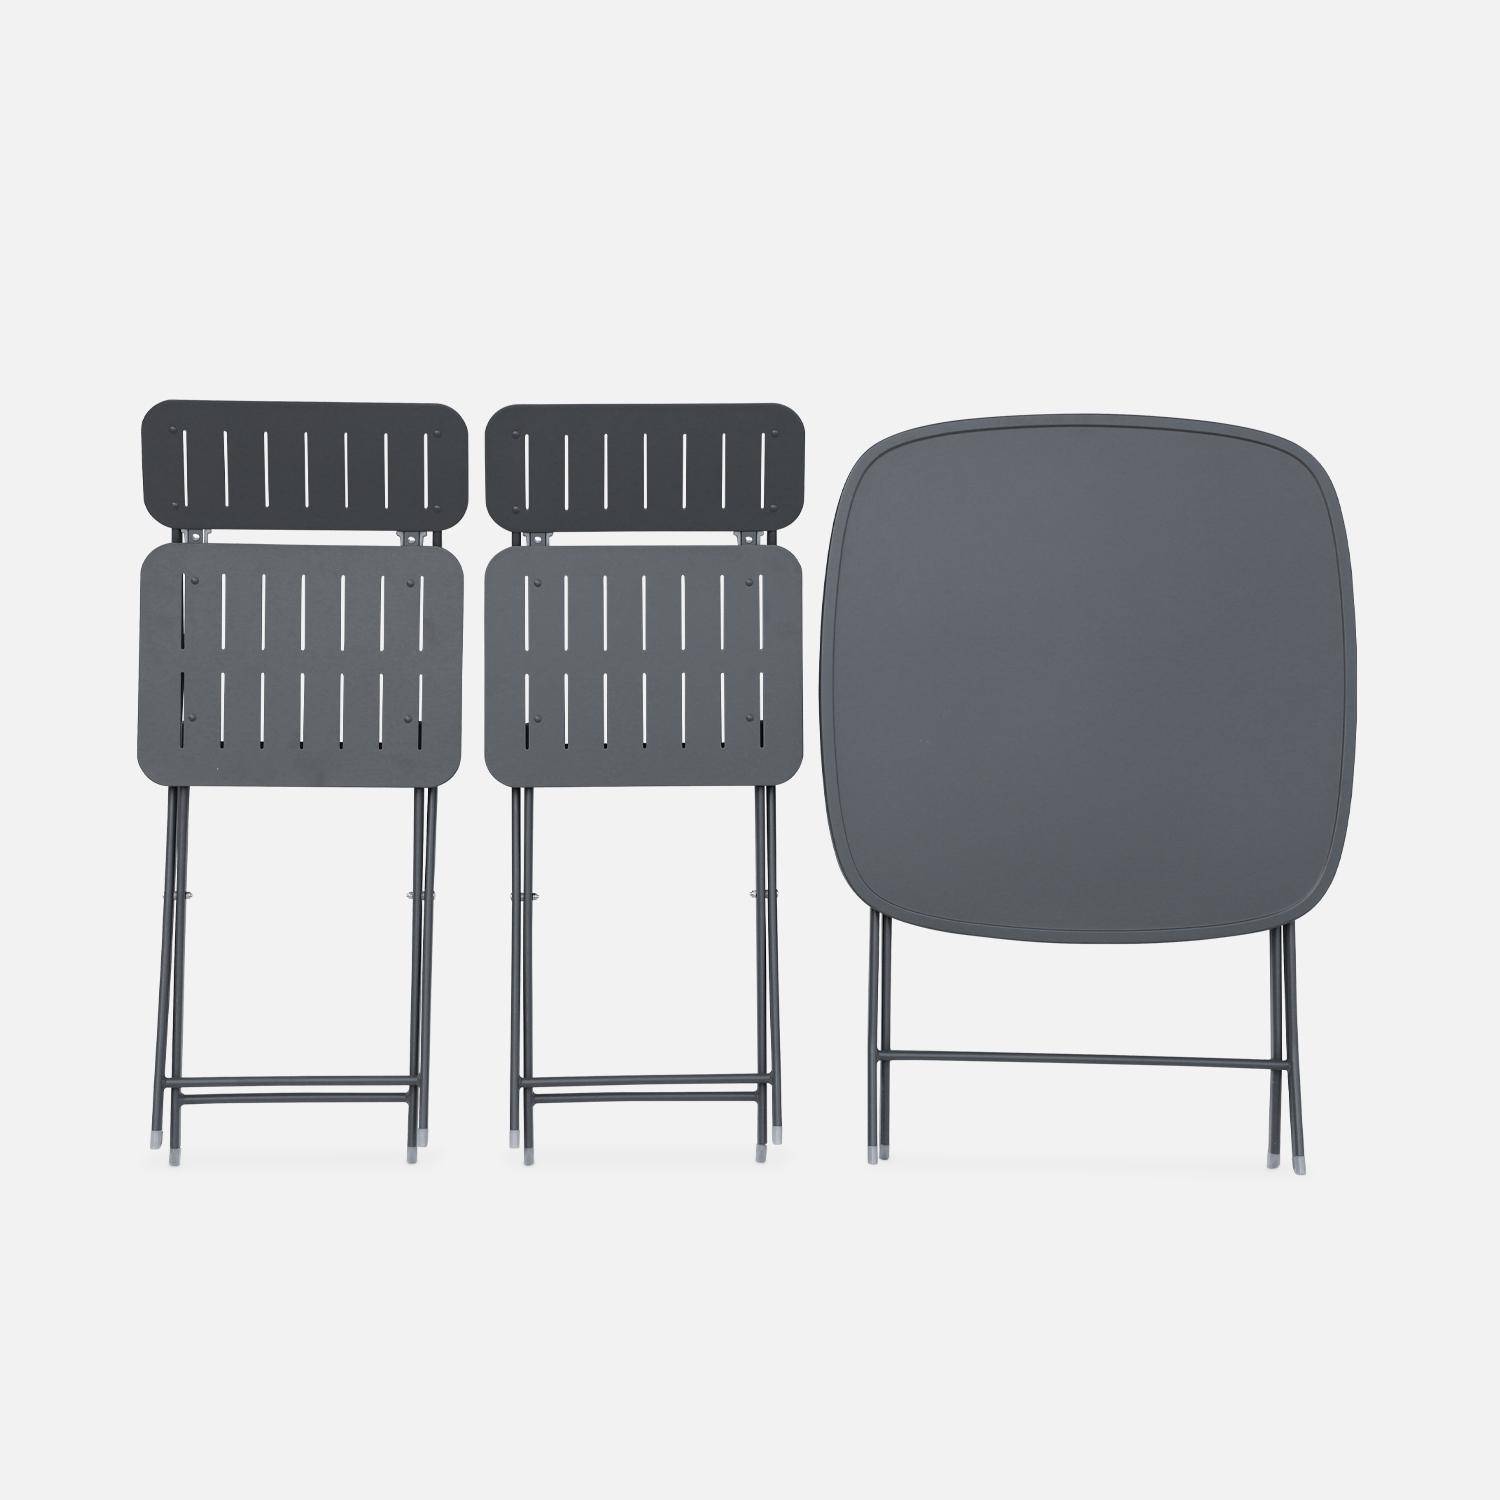 Klappbarer Gartentisch vom Typ Bistro anthrazit mit 2 klappbaren Stühlen aus robustem verzinktem Stahl - Marina Photo6